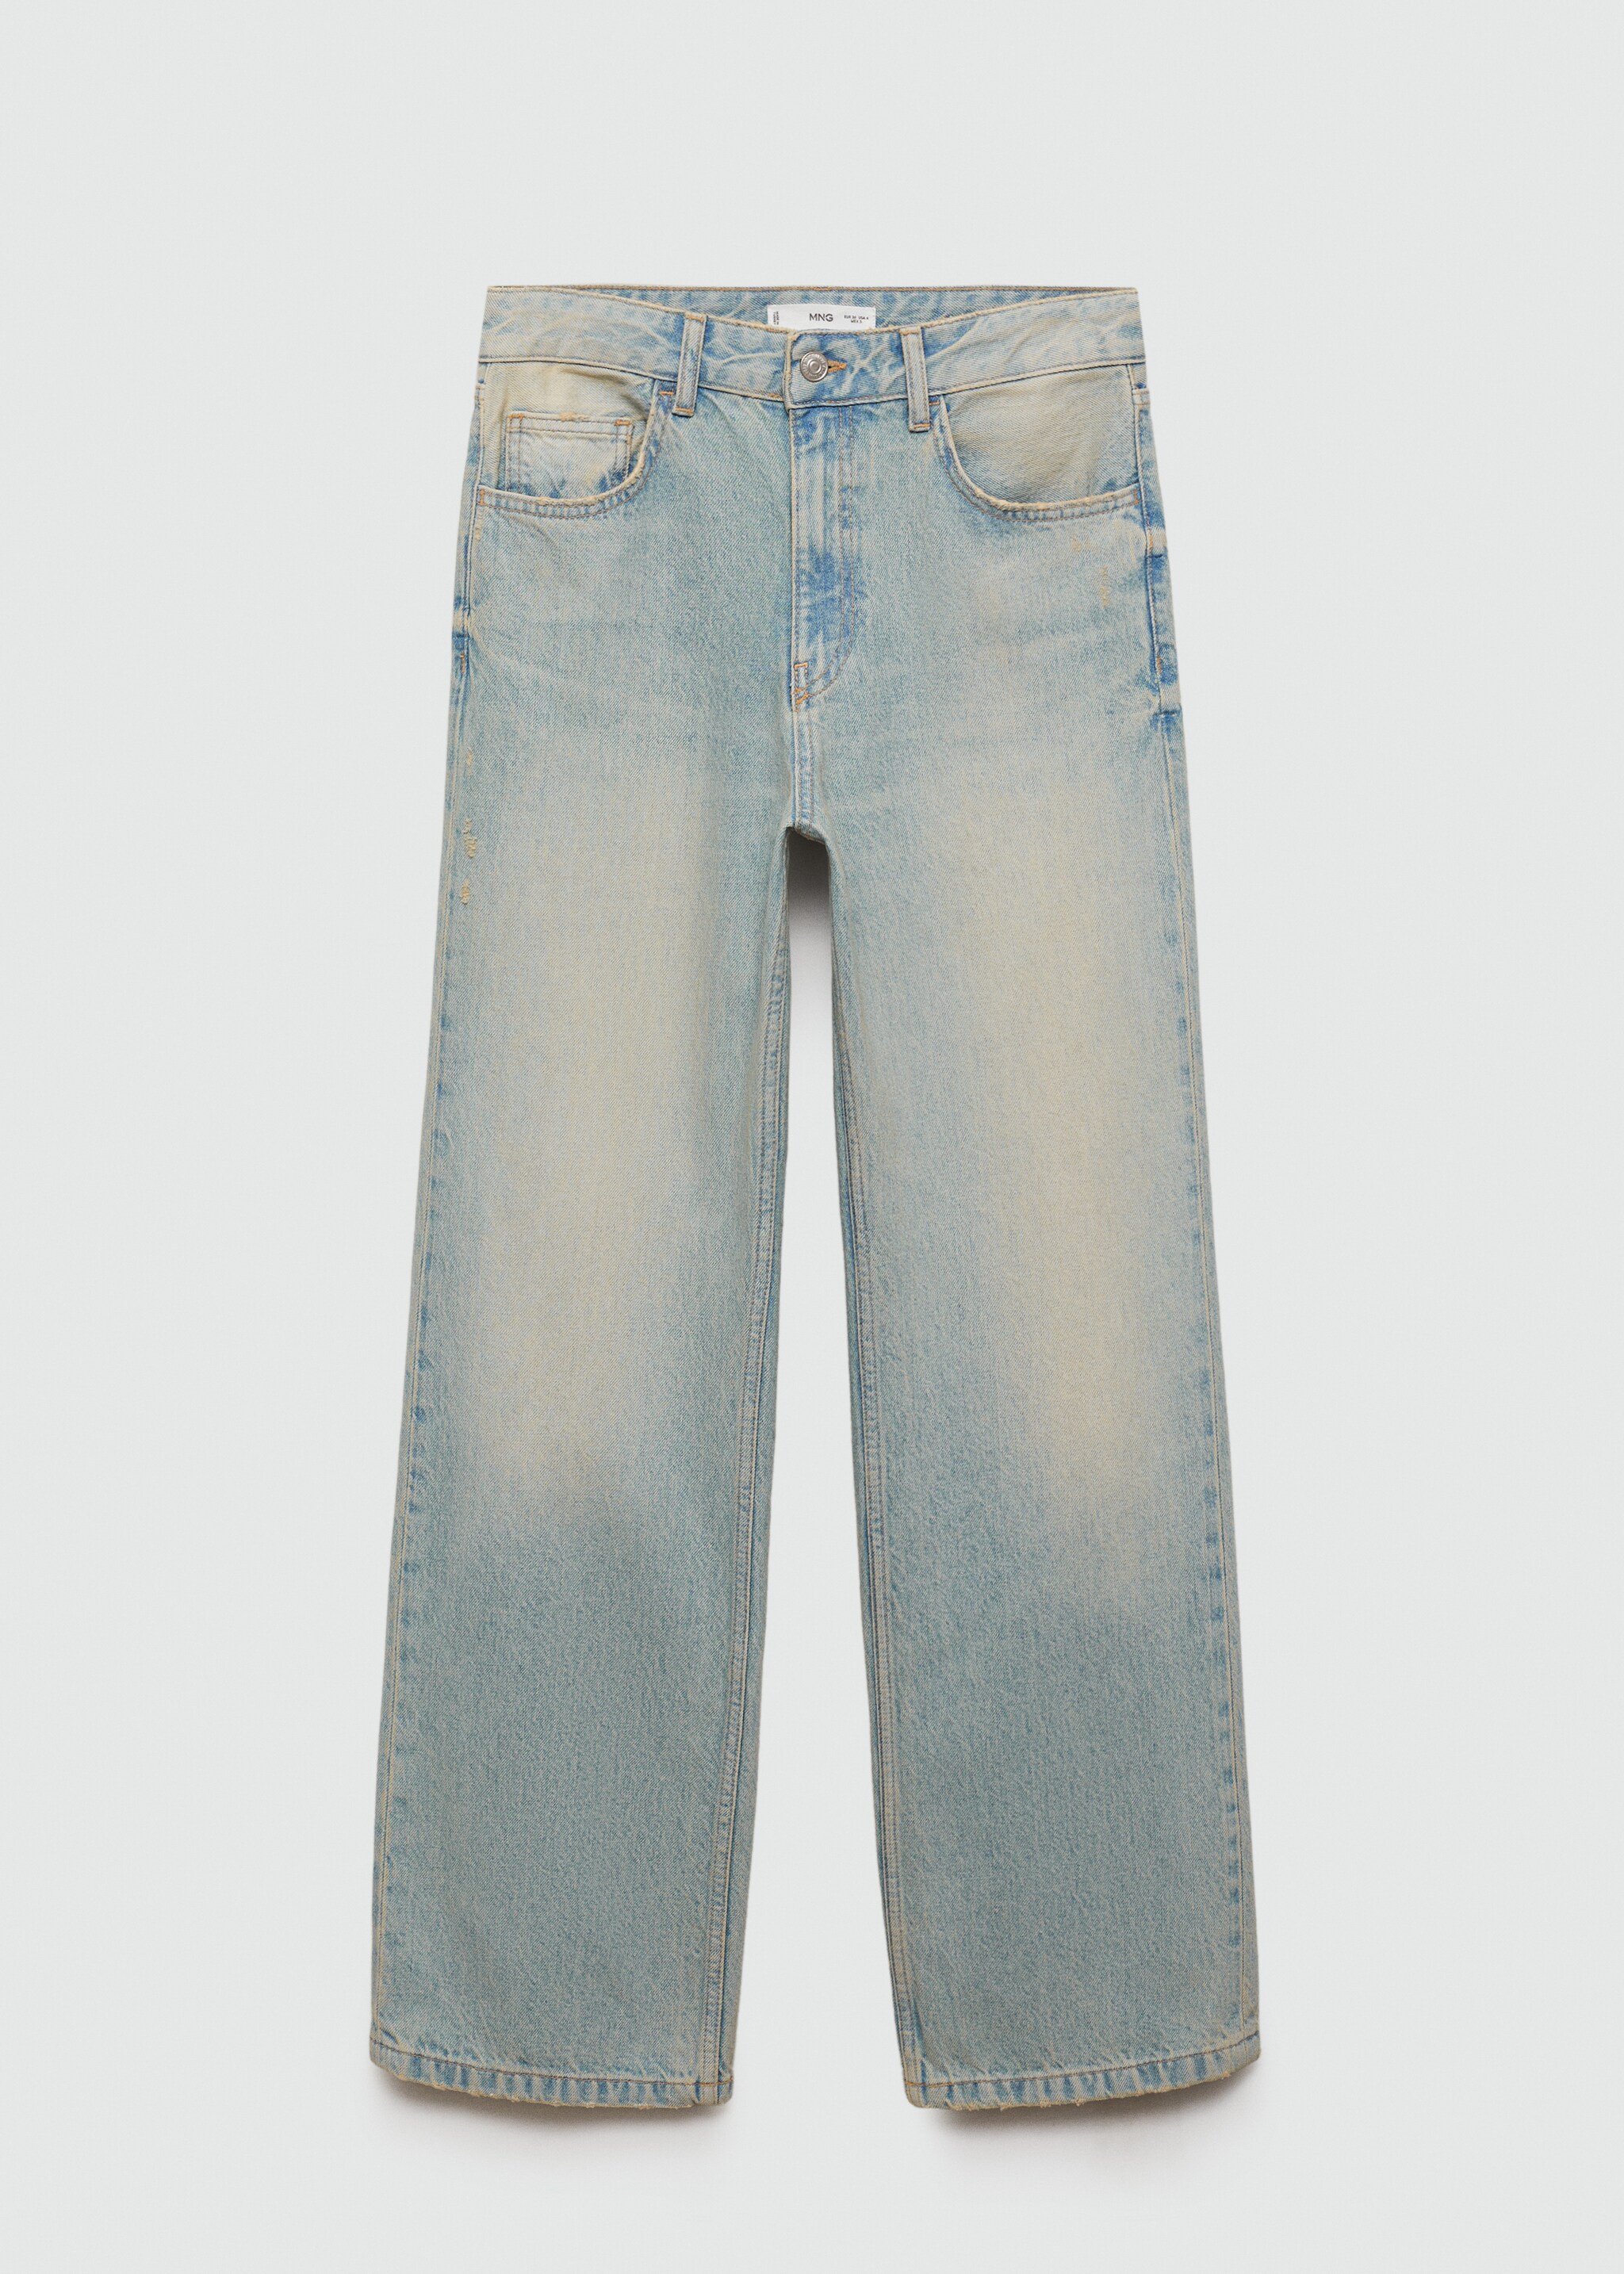 Mira straight jeans medium rise - Artigo sem modelo